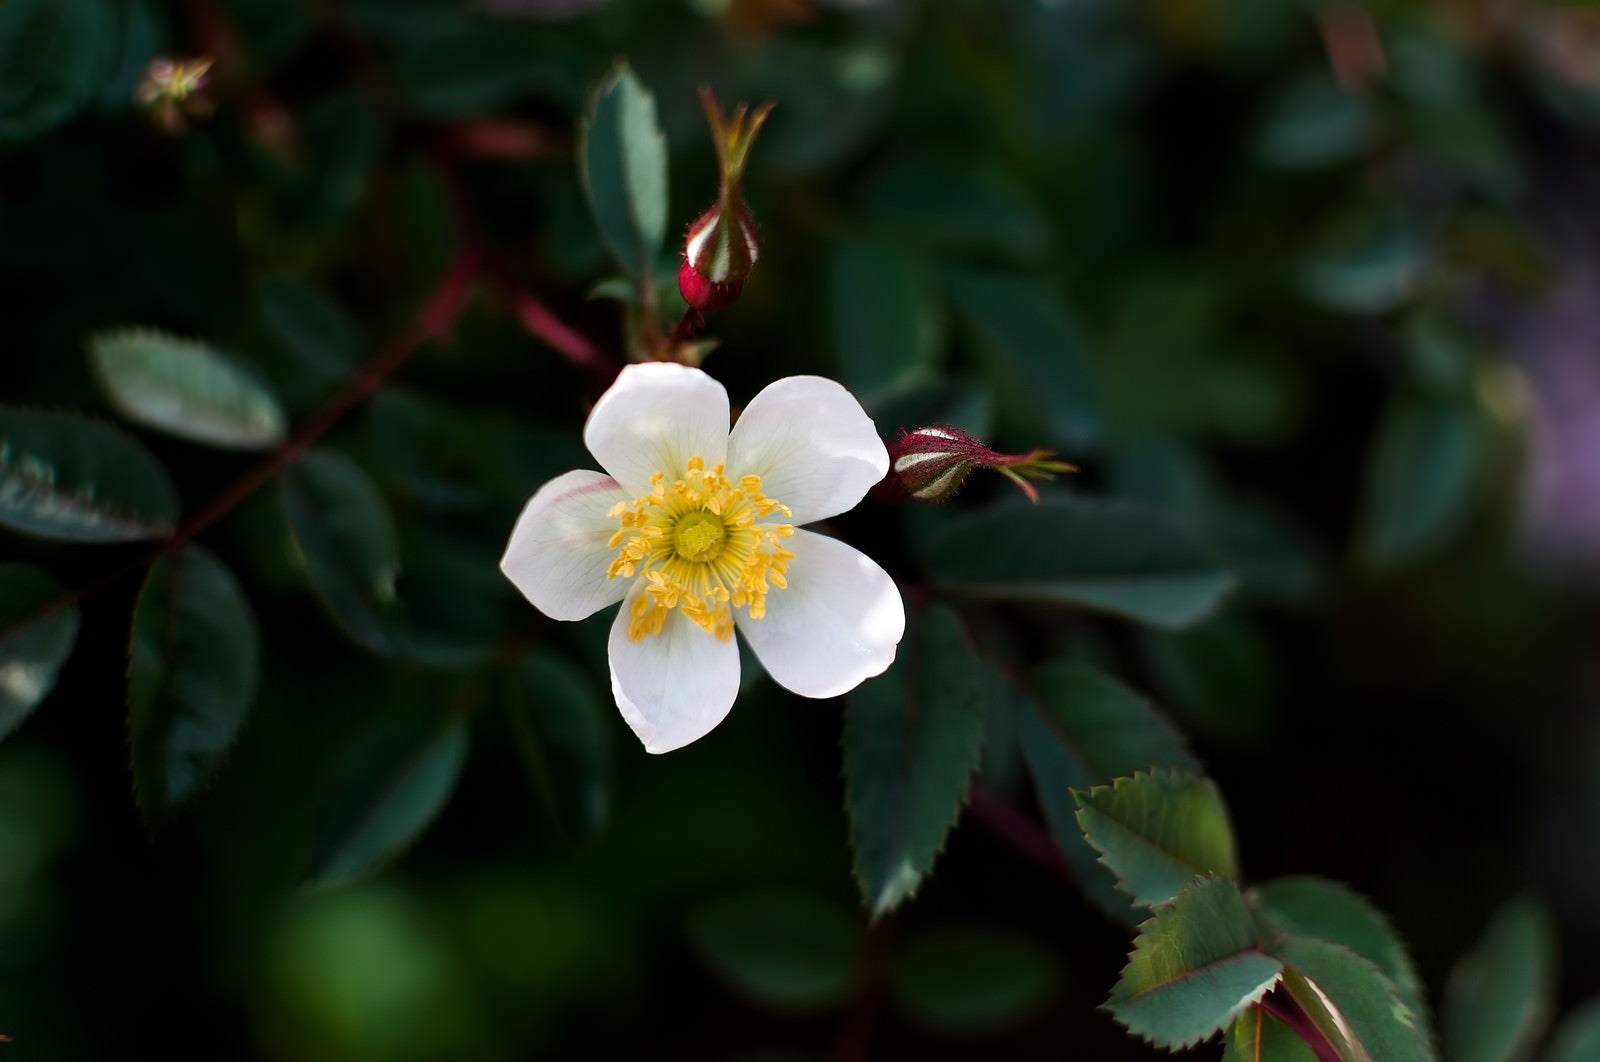 「小さい花」の写真